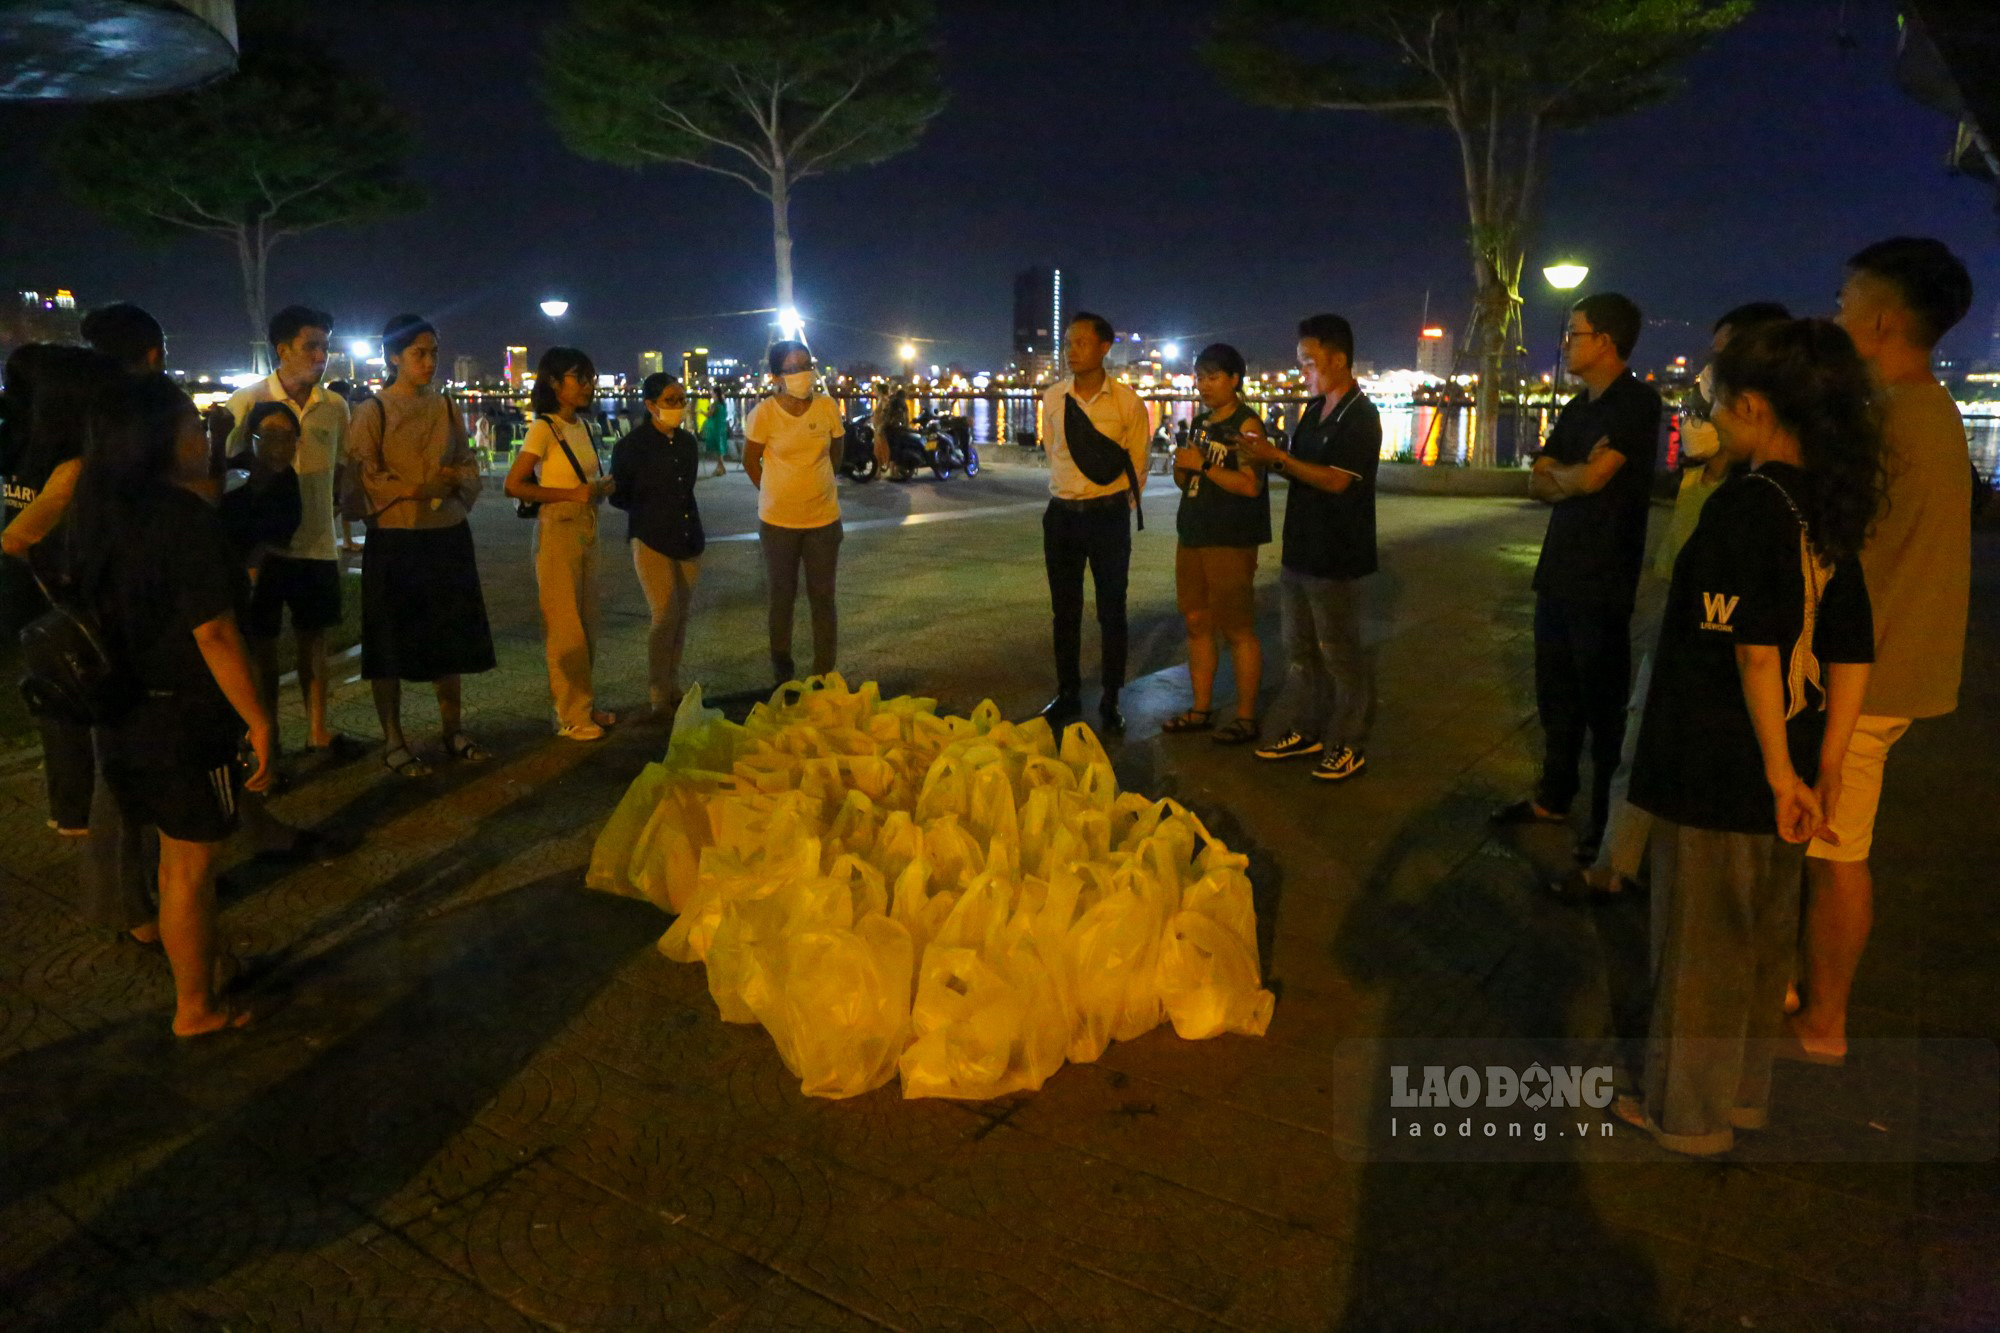 Hơn 20 giờ tối, gần 20 tình nguyện viên của chương trình “Đêm yêu thương” tập trung dưới chân cầu Rồng cùng với 80 suất ăn đêm để dành tặng cho những người lao động trên đường phố Đà Nẵng.